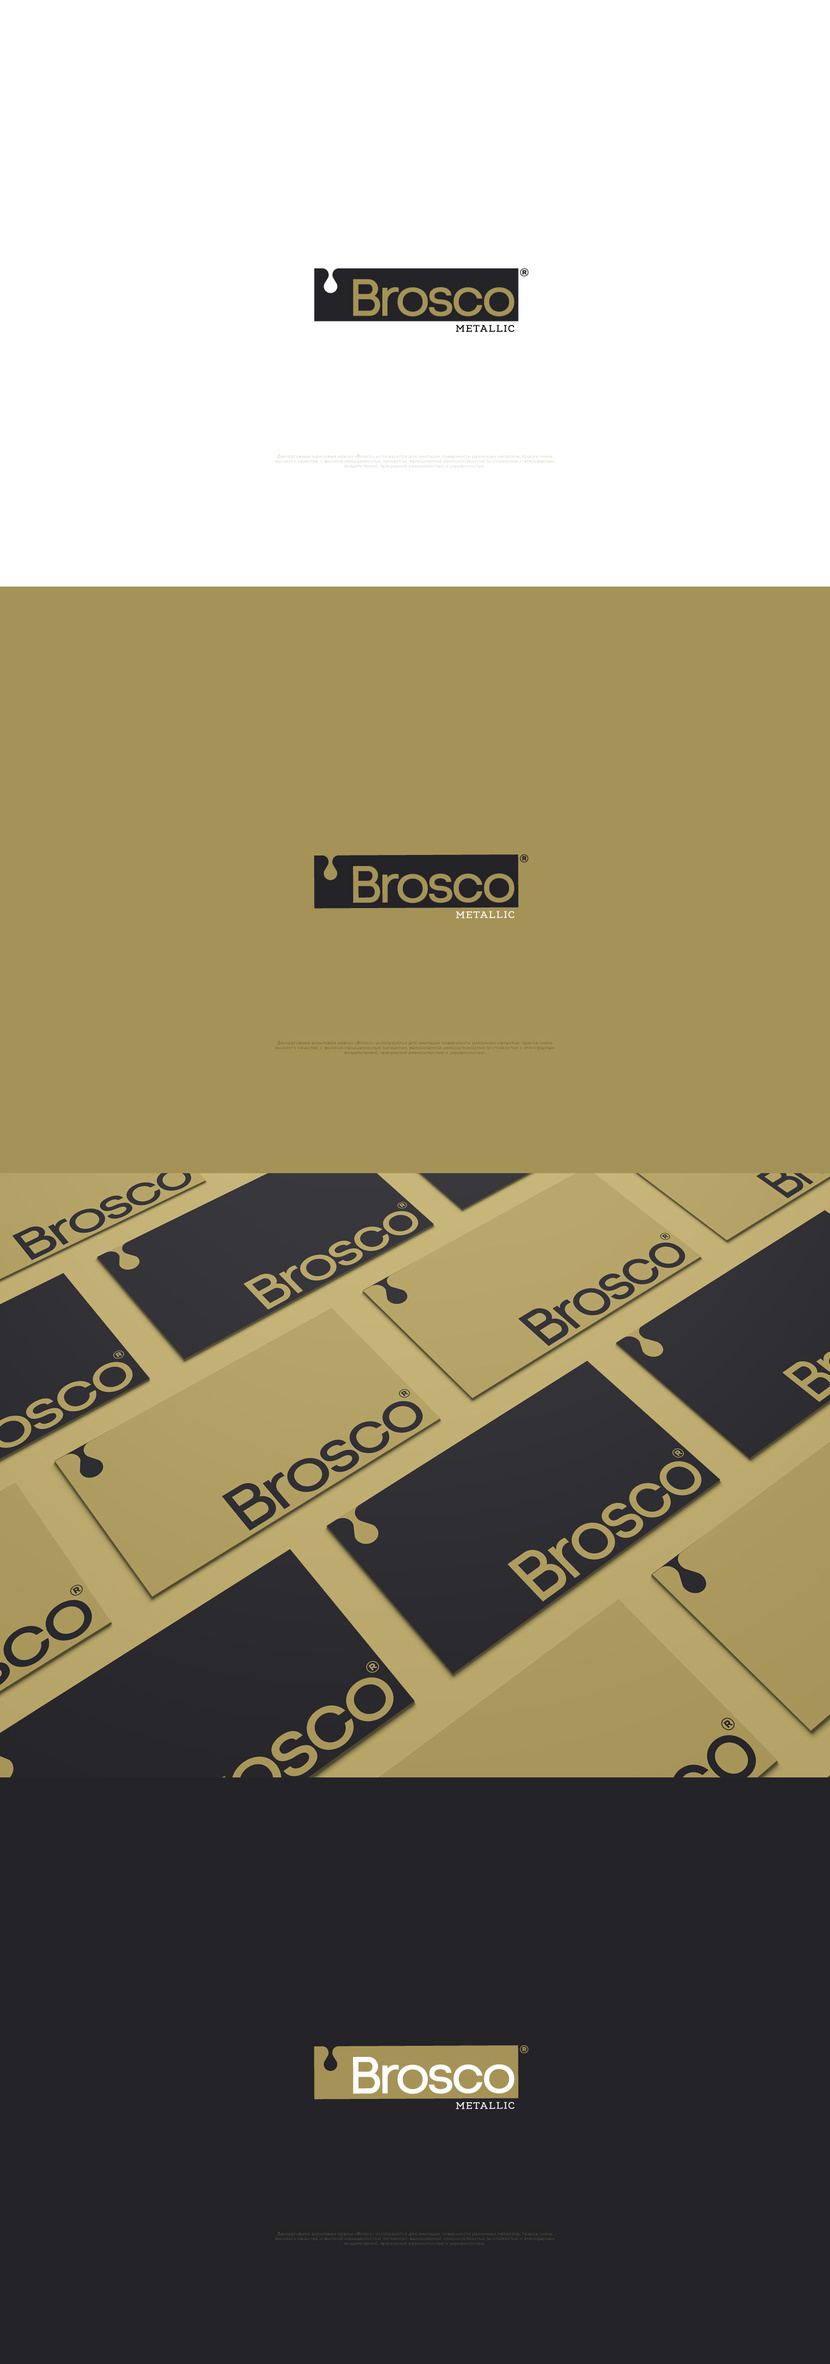 Разработка логотипа и фирменного стиля производителя акриловой краски для дизайнеров Brosco